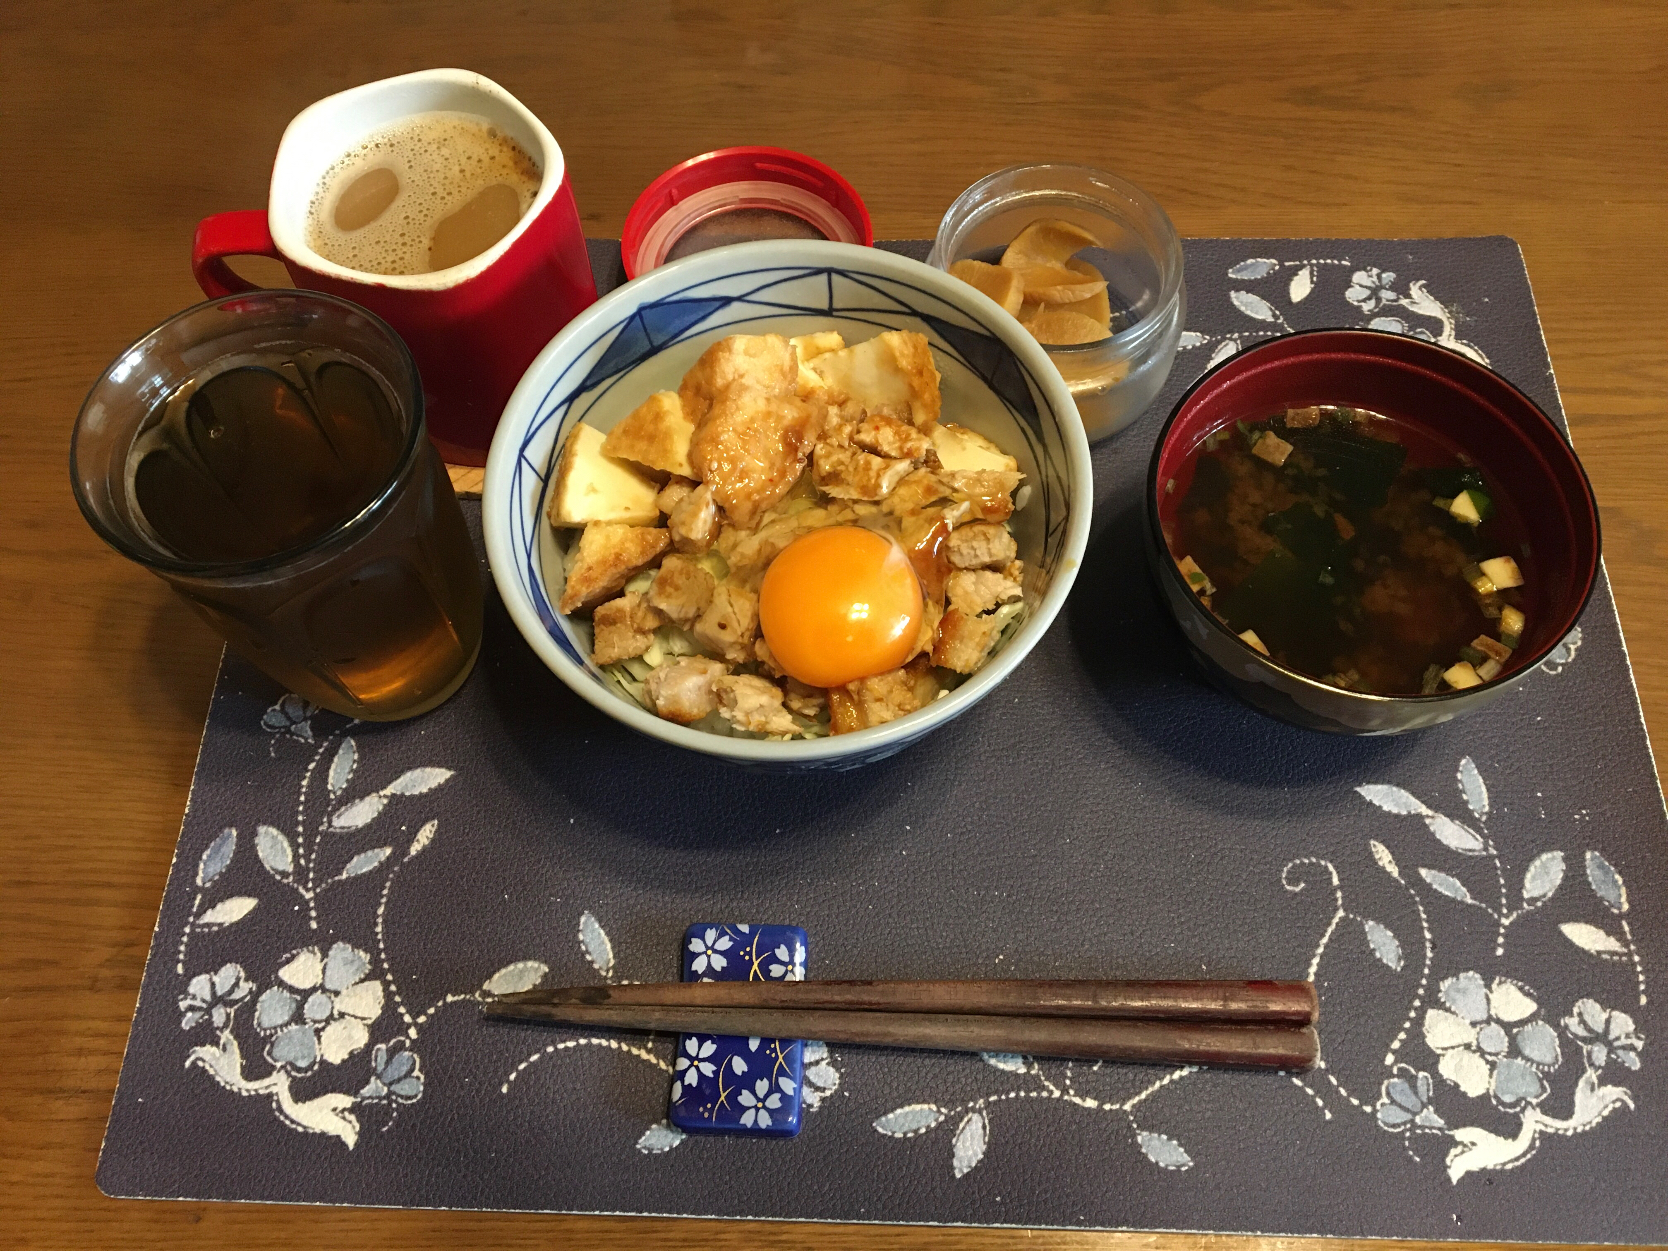 スタミナ丼、沢庵、味噌汁、ホットコーヒー(朝ご飯)